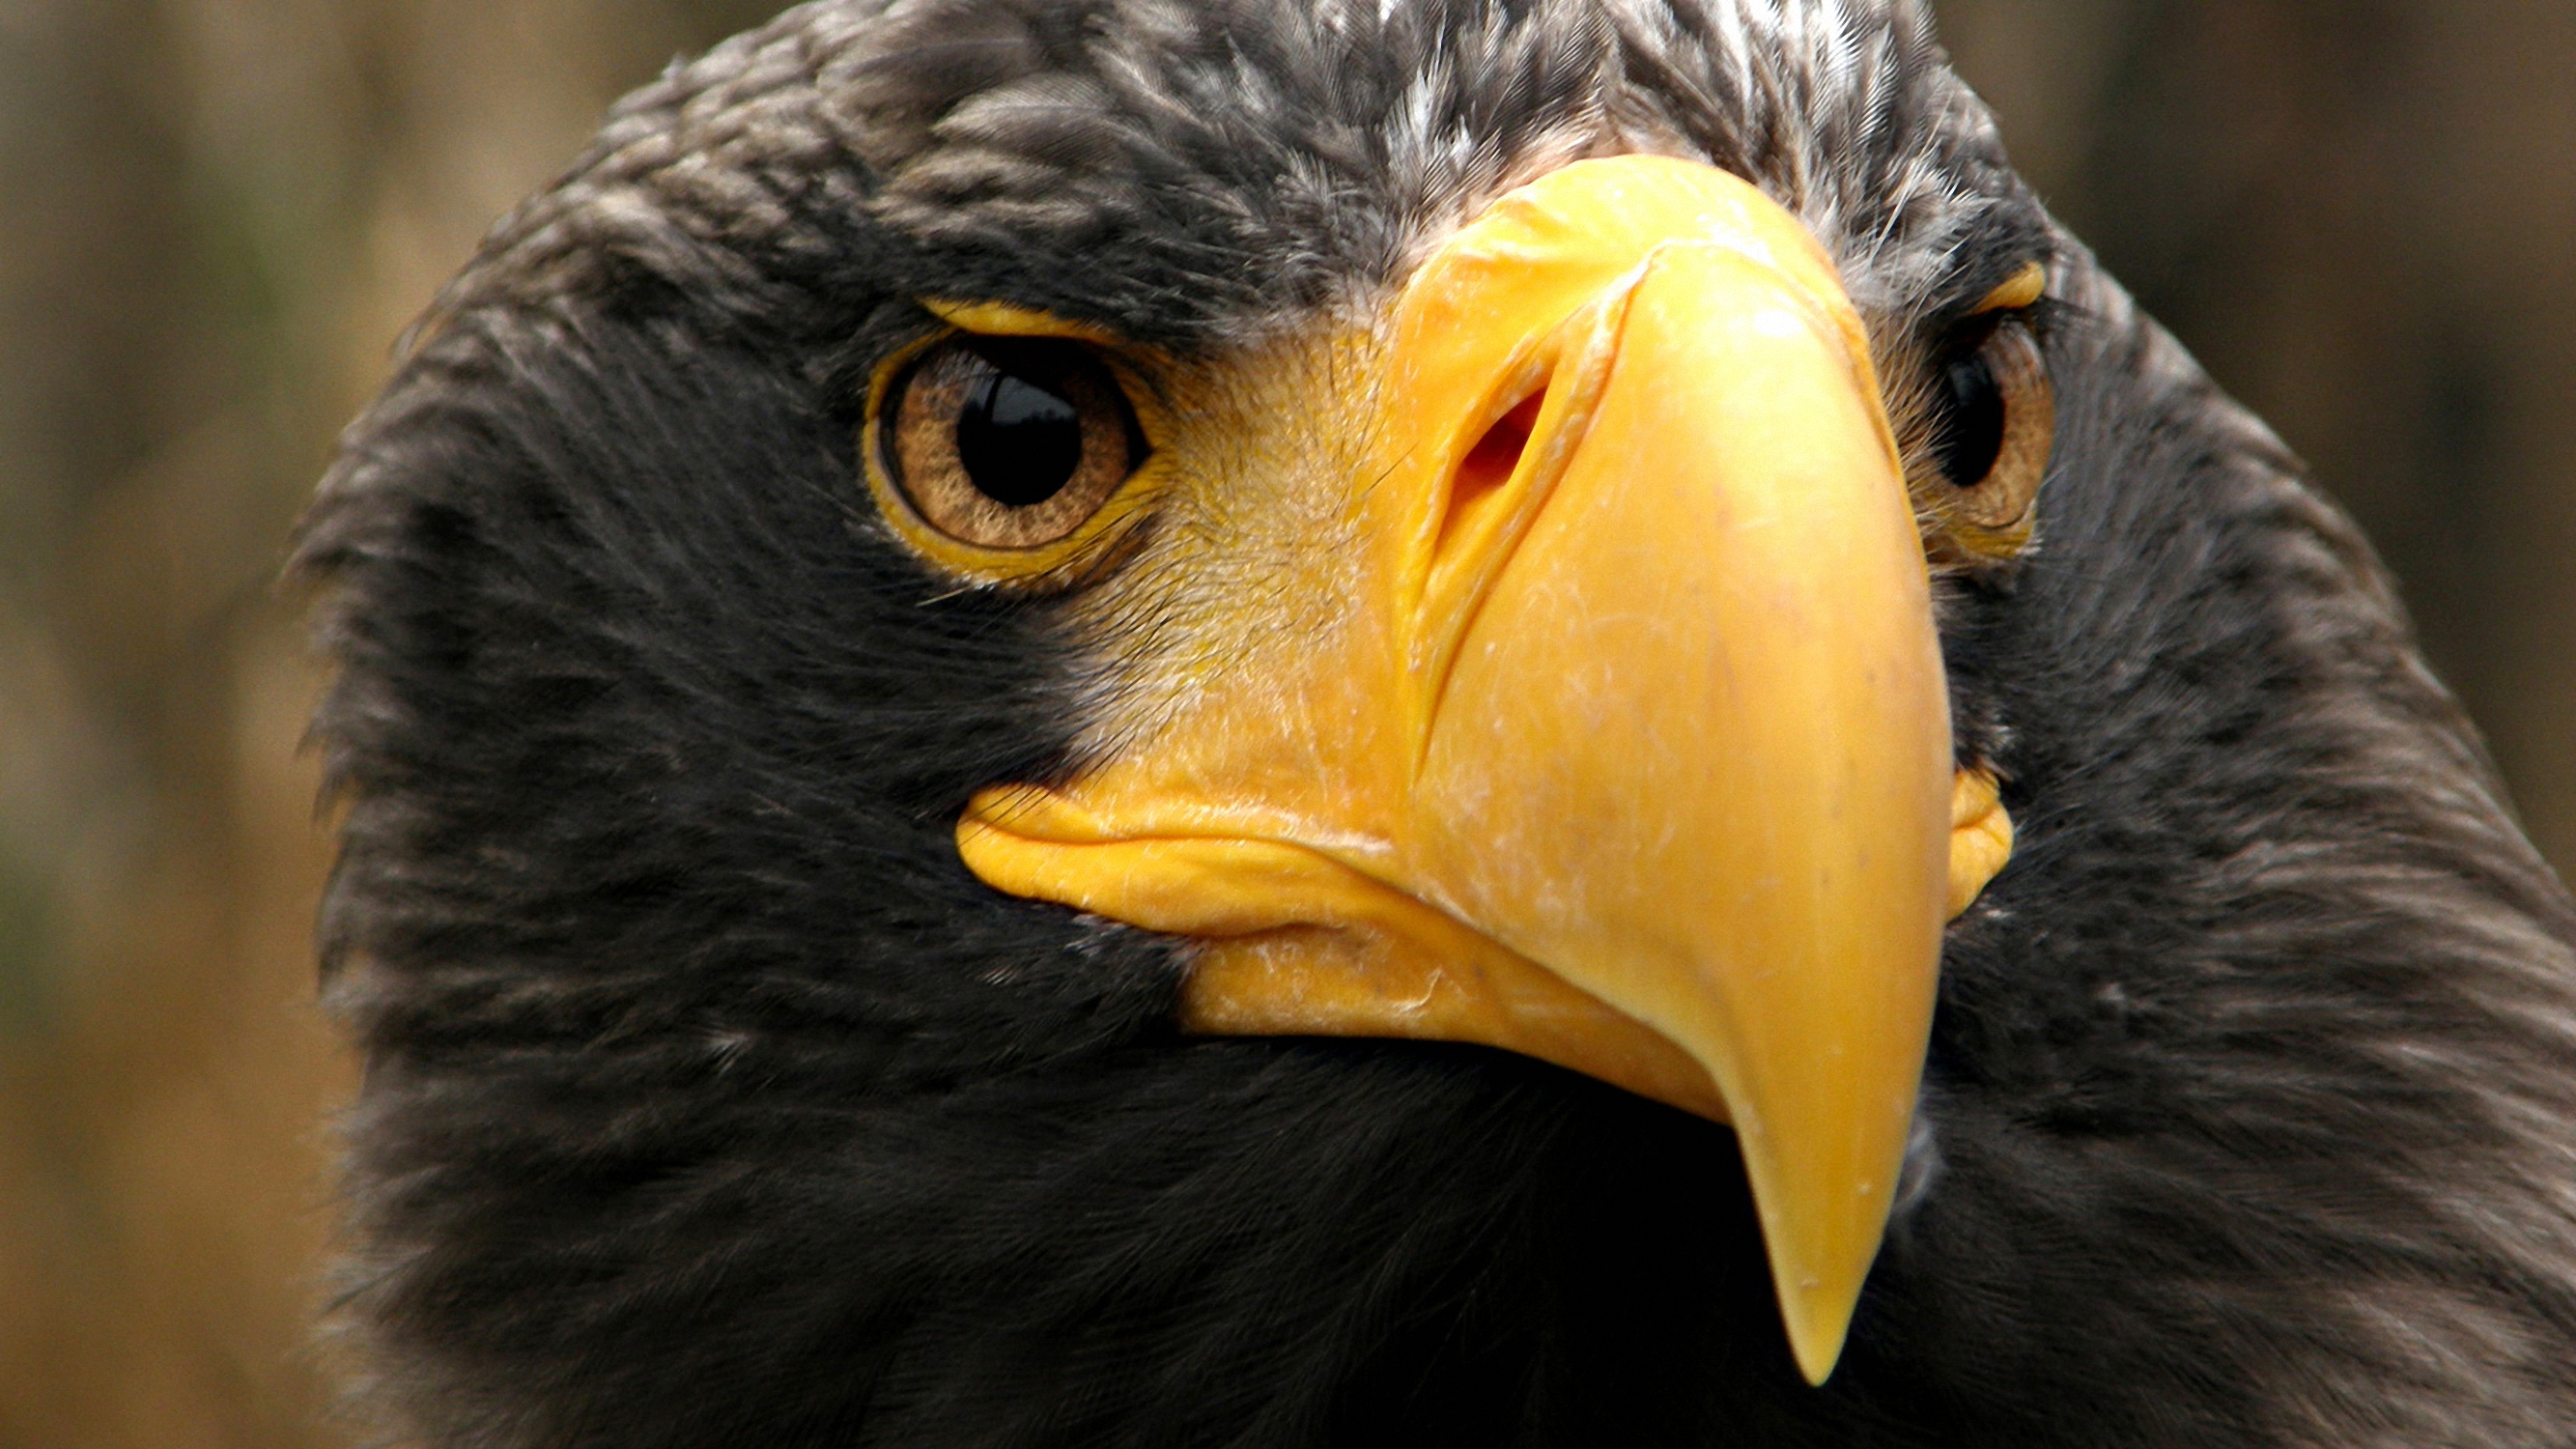 Descarga gratuita de fondo de pantalla para móvil de Animales, Águila, Aves.